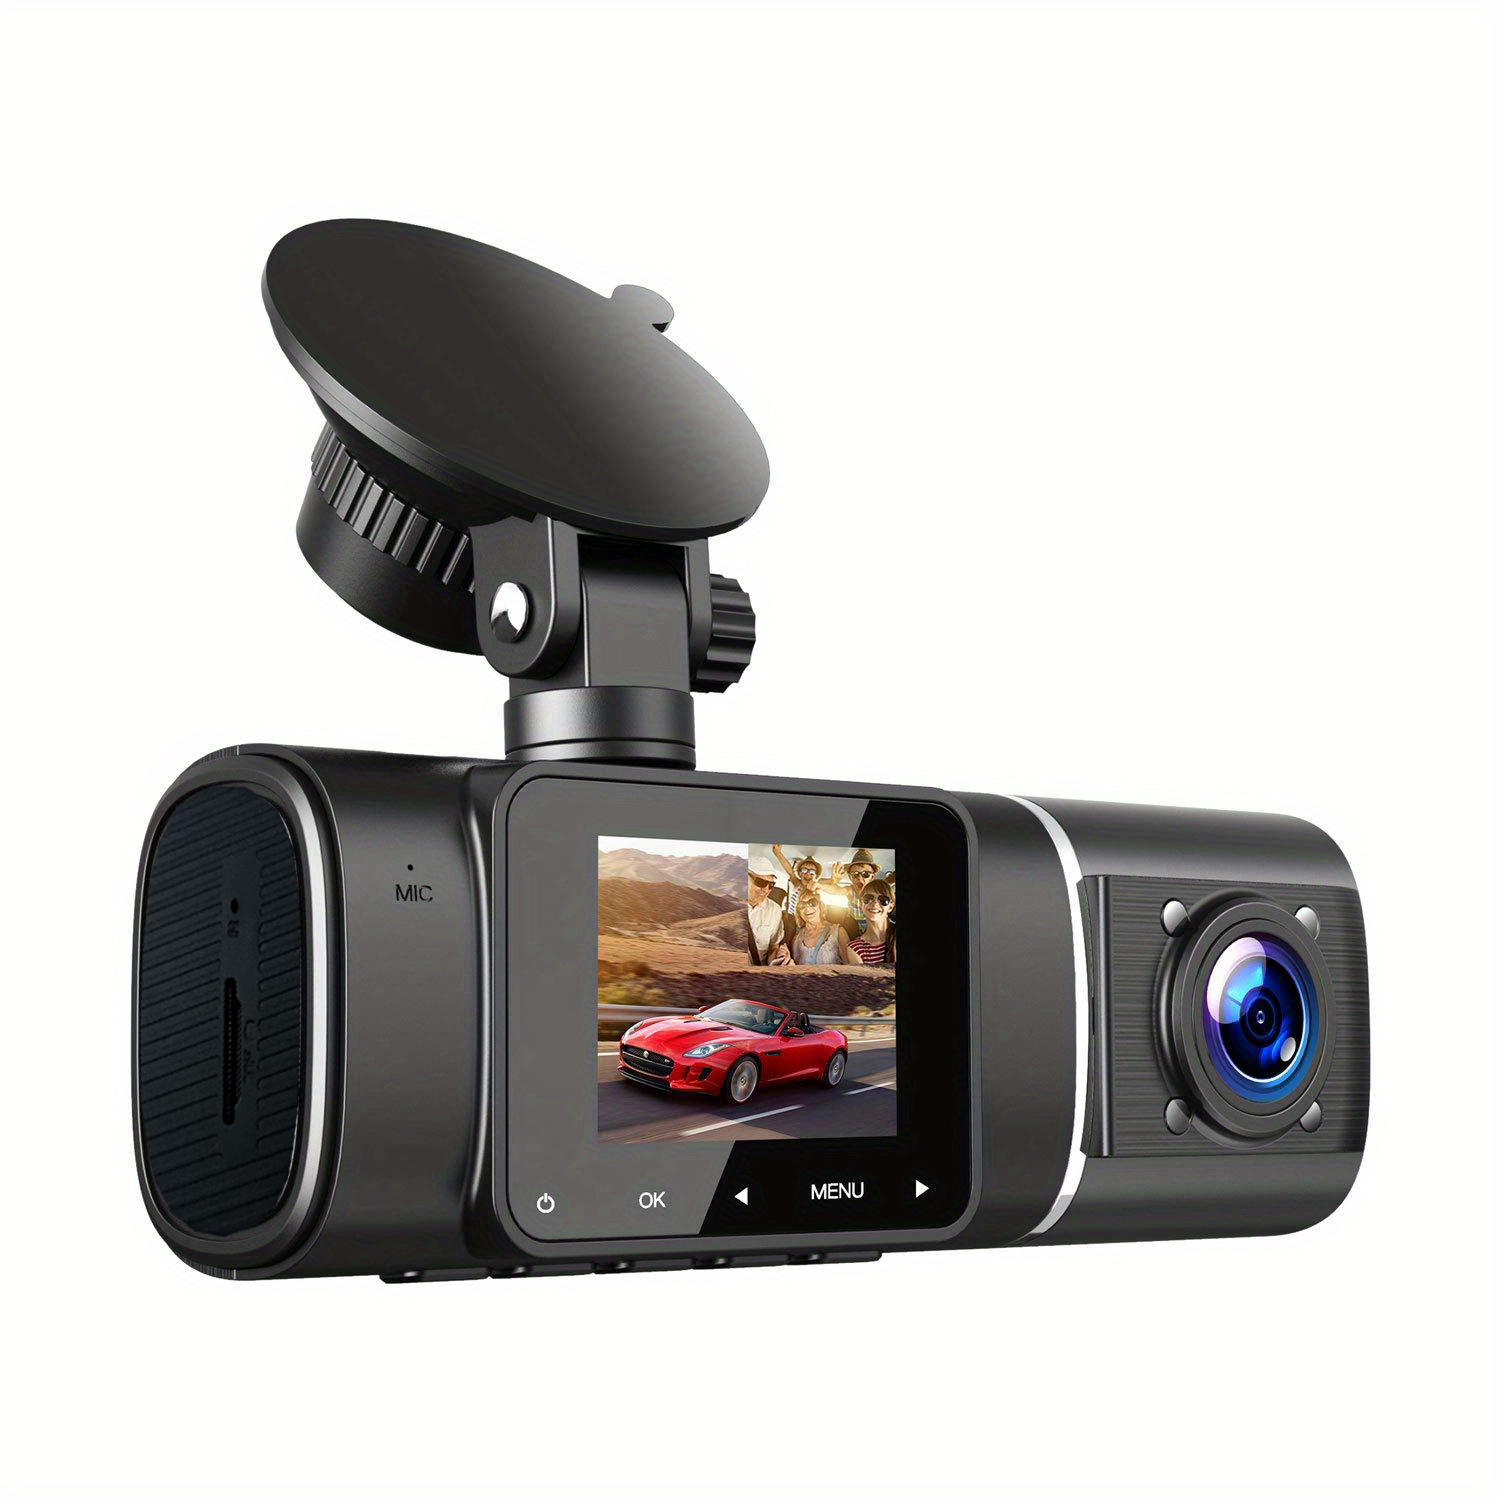 Comprar Grabadora de vídeo Dvr para coche de 2 pulgadas, 3 cámaras, cámara  de salpicadero para coche, cámara frontal e interior para cabina para  conductores de Taxi Uber